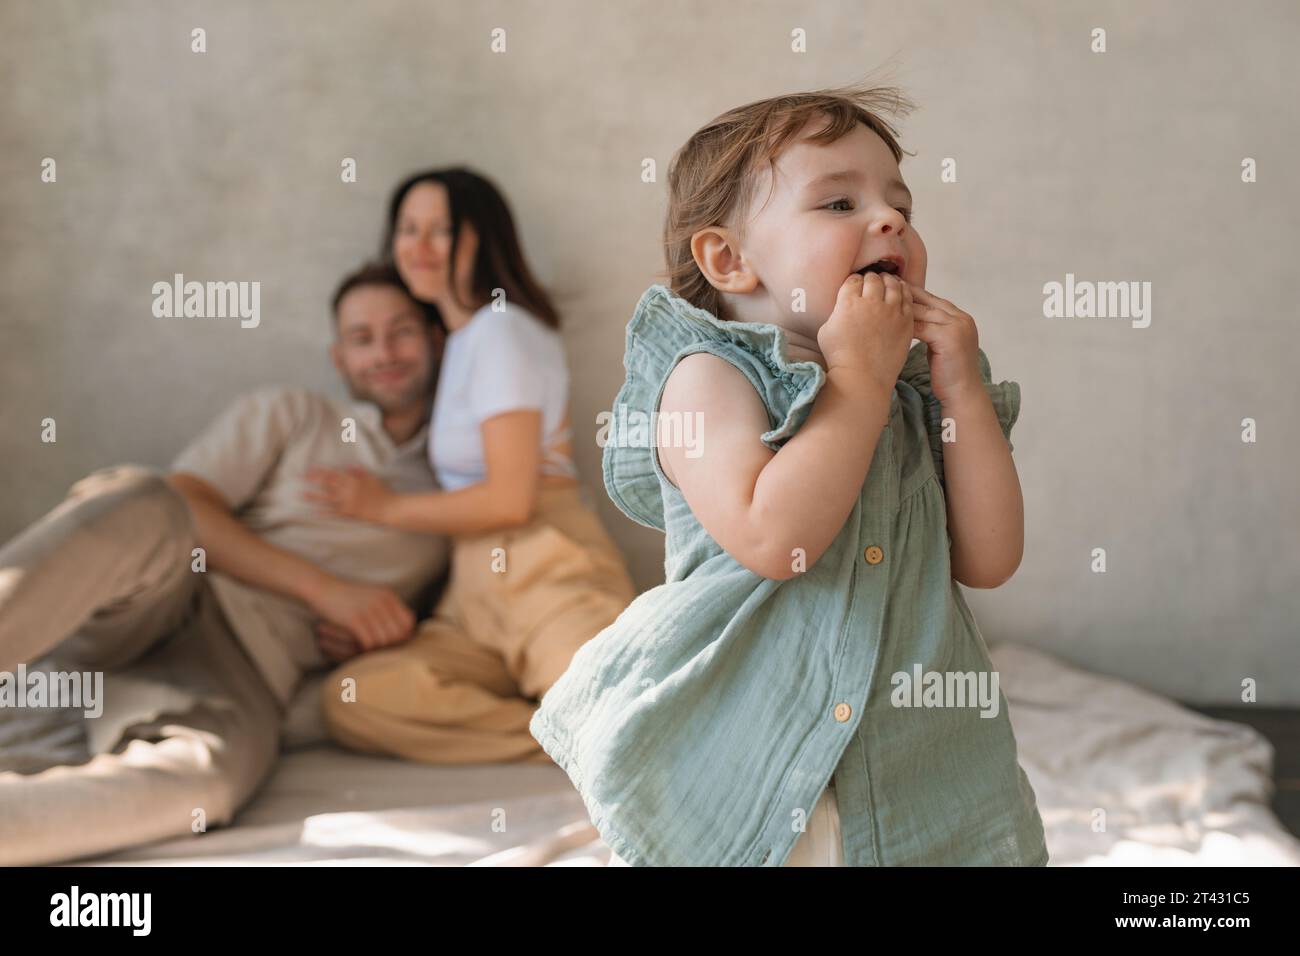 Glückliche Eltern sitzen auf dem Boden in einem Wohnzimmer und beobachten ihre Tochter beim Spielen Stockfoto